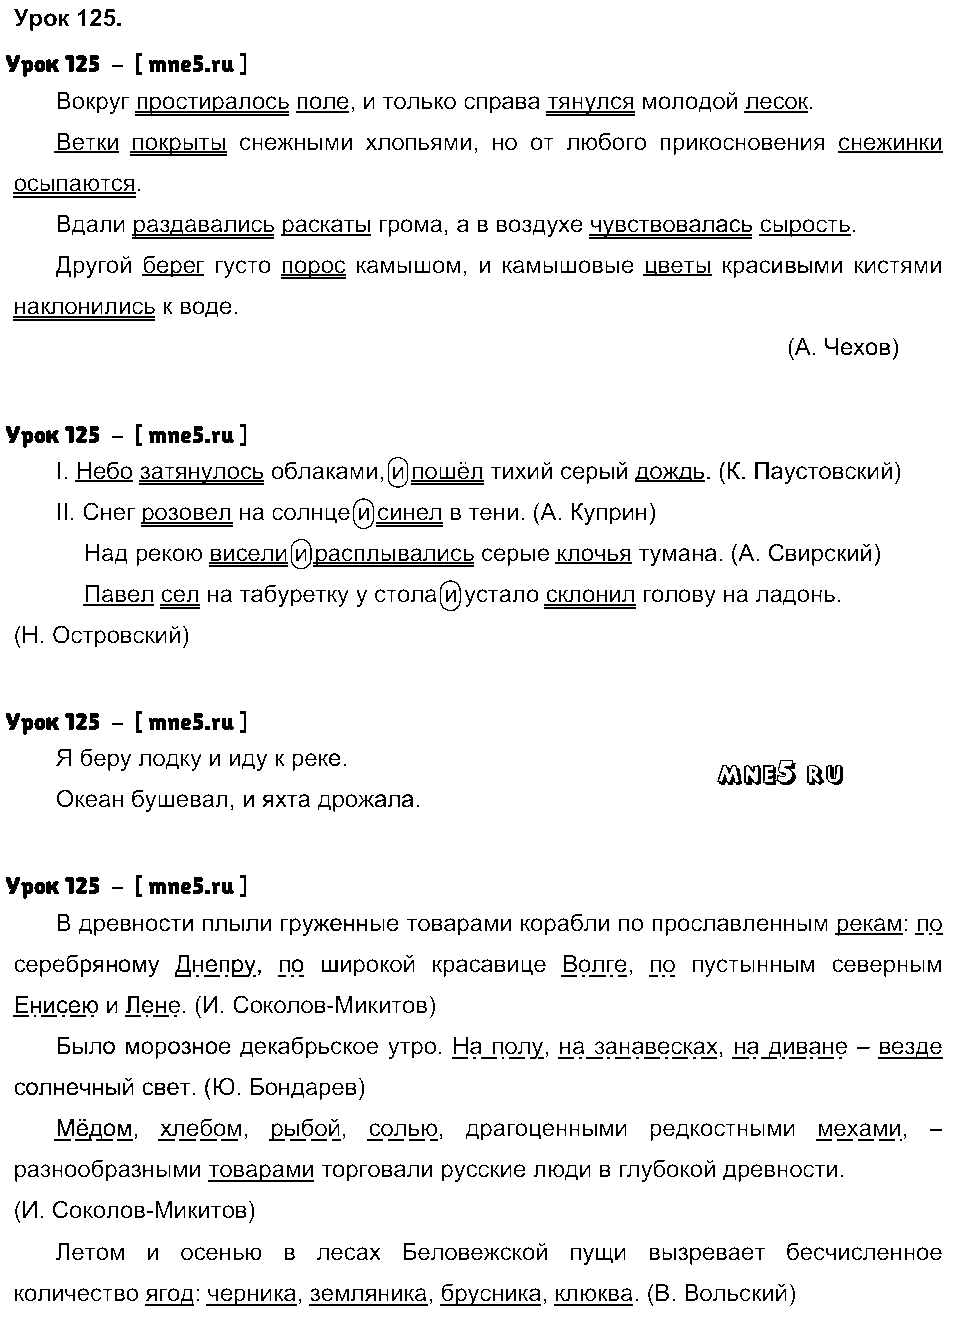 ГДЗ Русский язык 4 класс - Урок 125